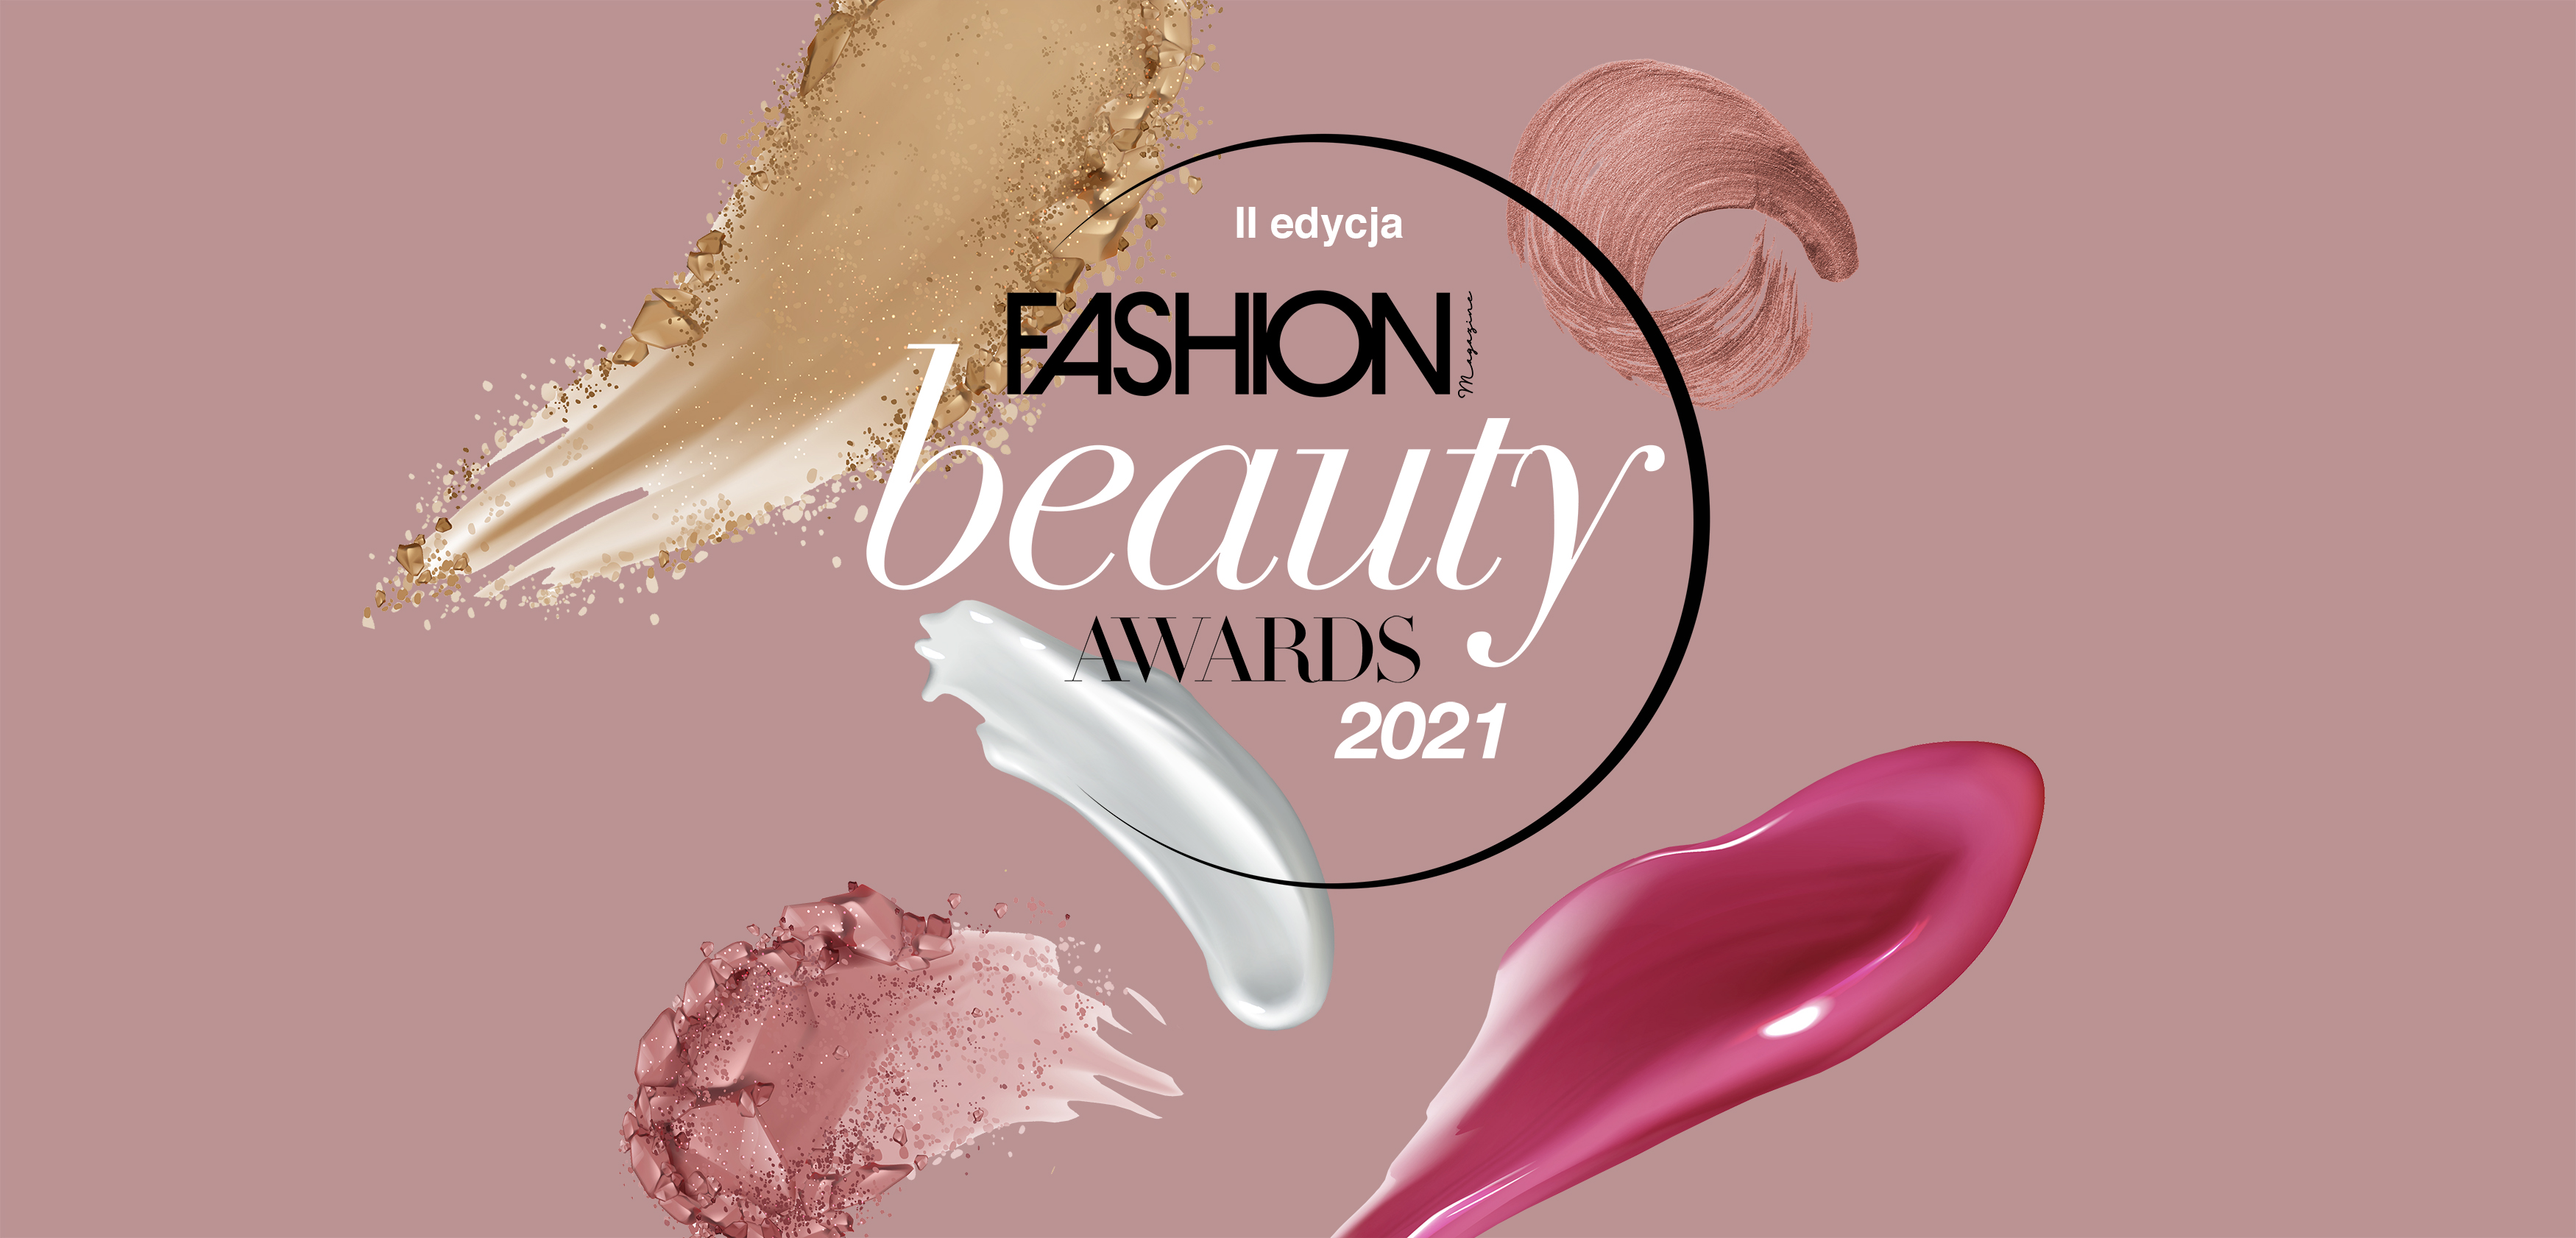 Fashion Magazine Beauty Awards 2021: oto NOMINACJE